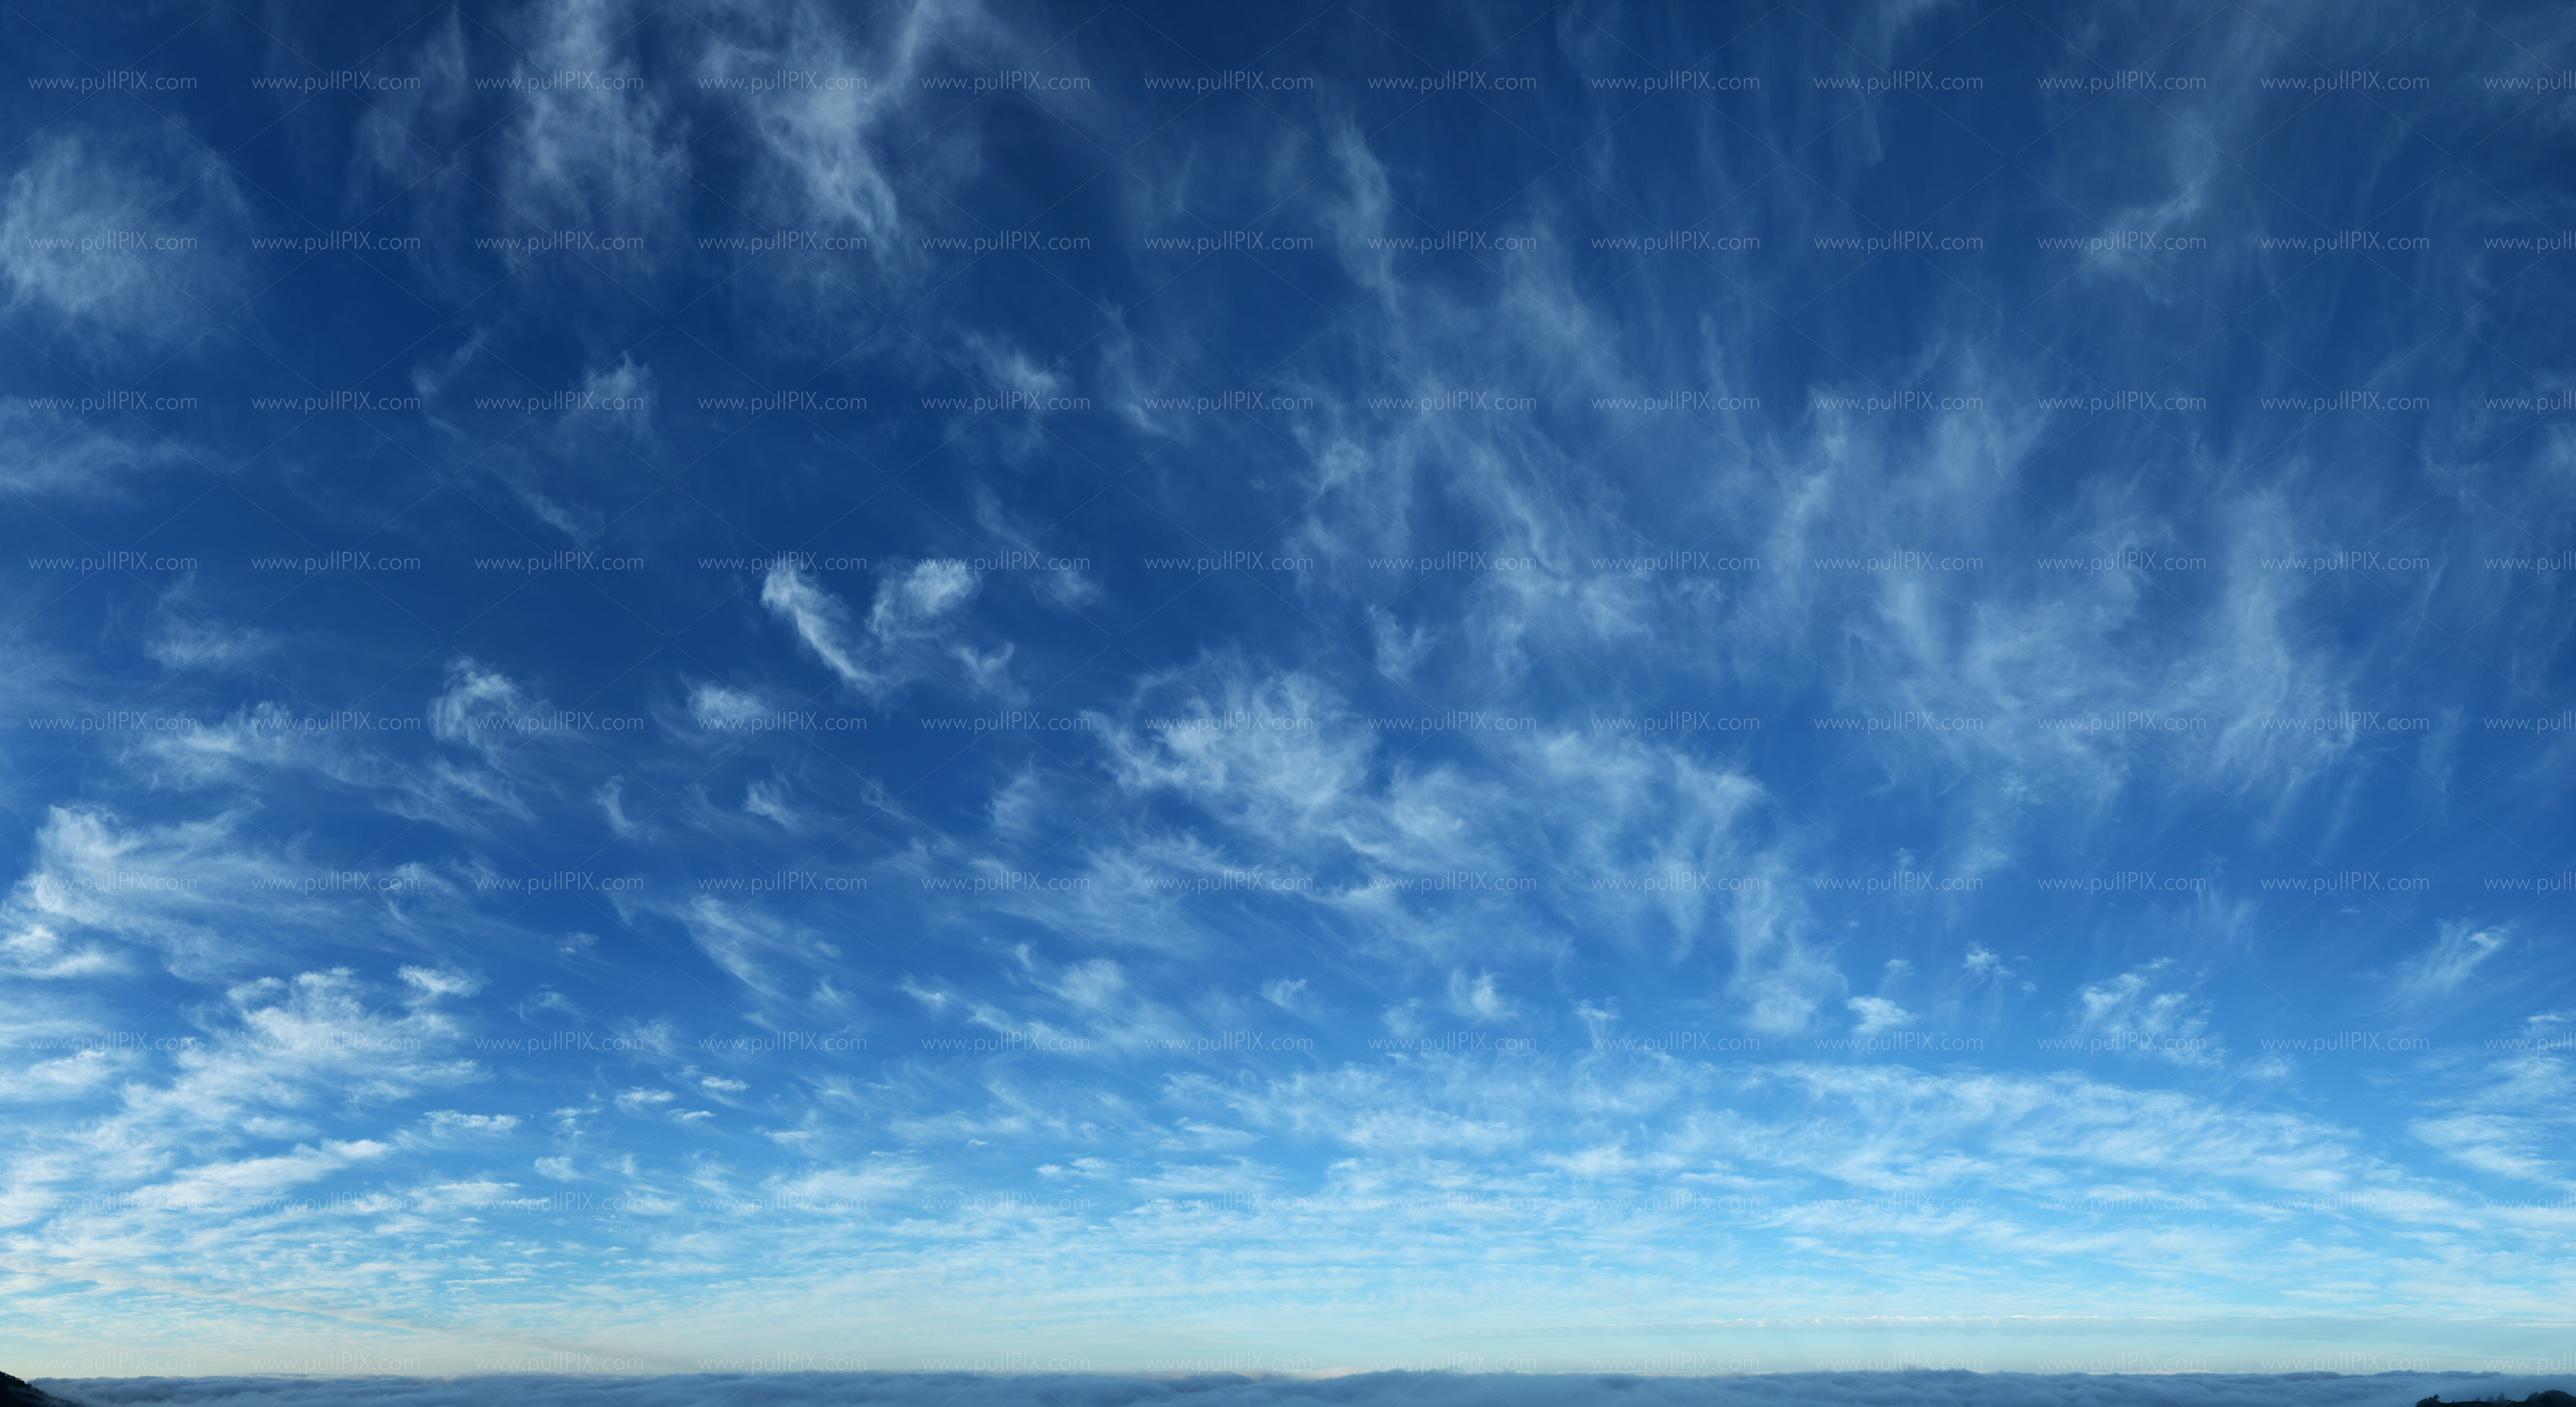 Preview Cirruswolken auf La Palma.jpg